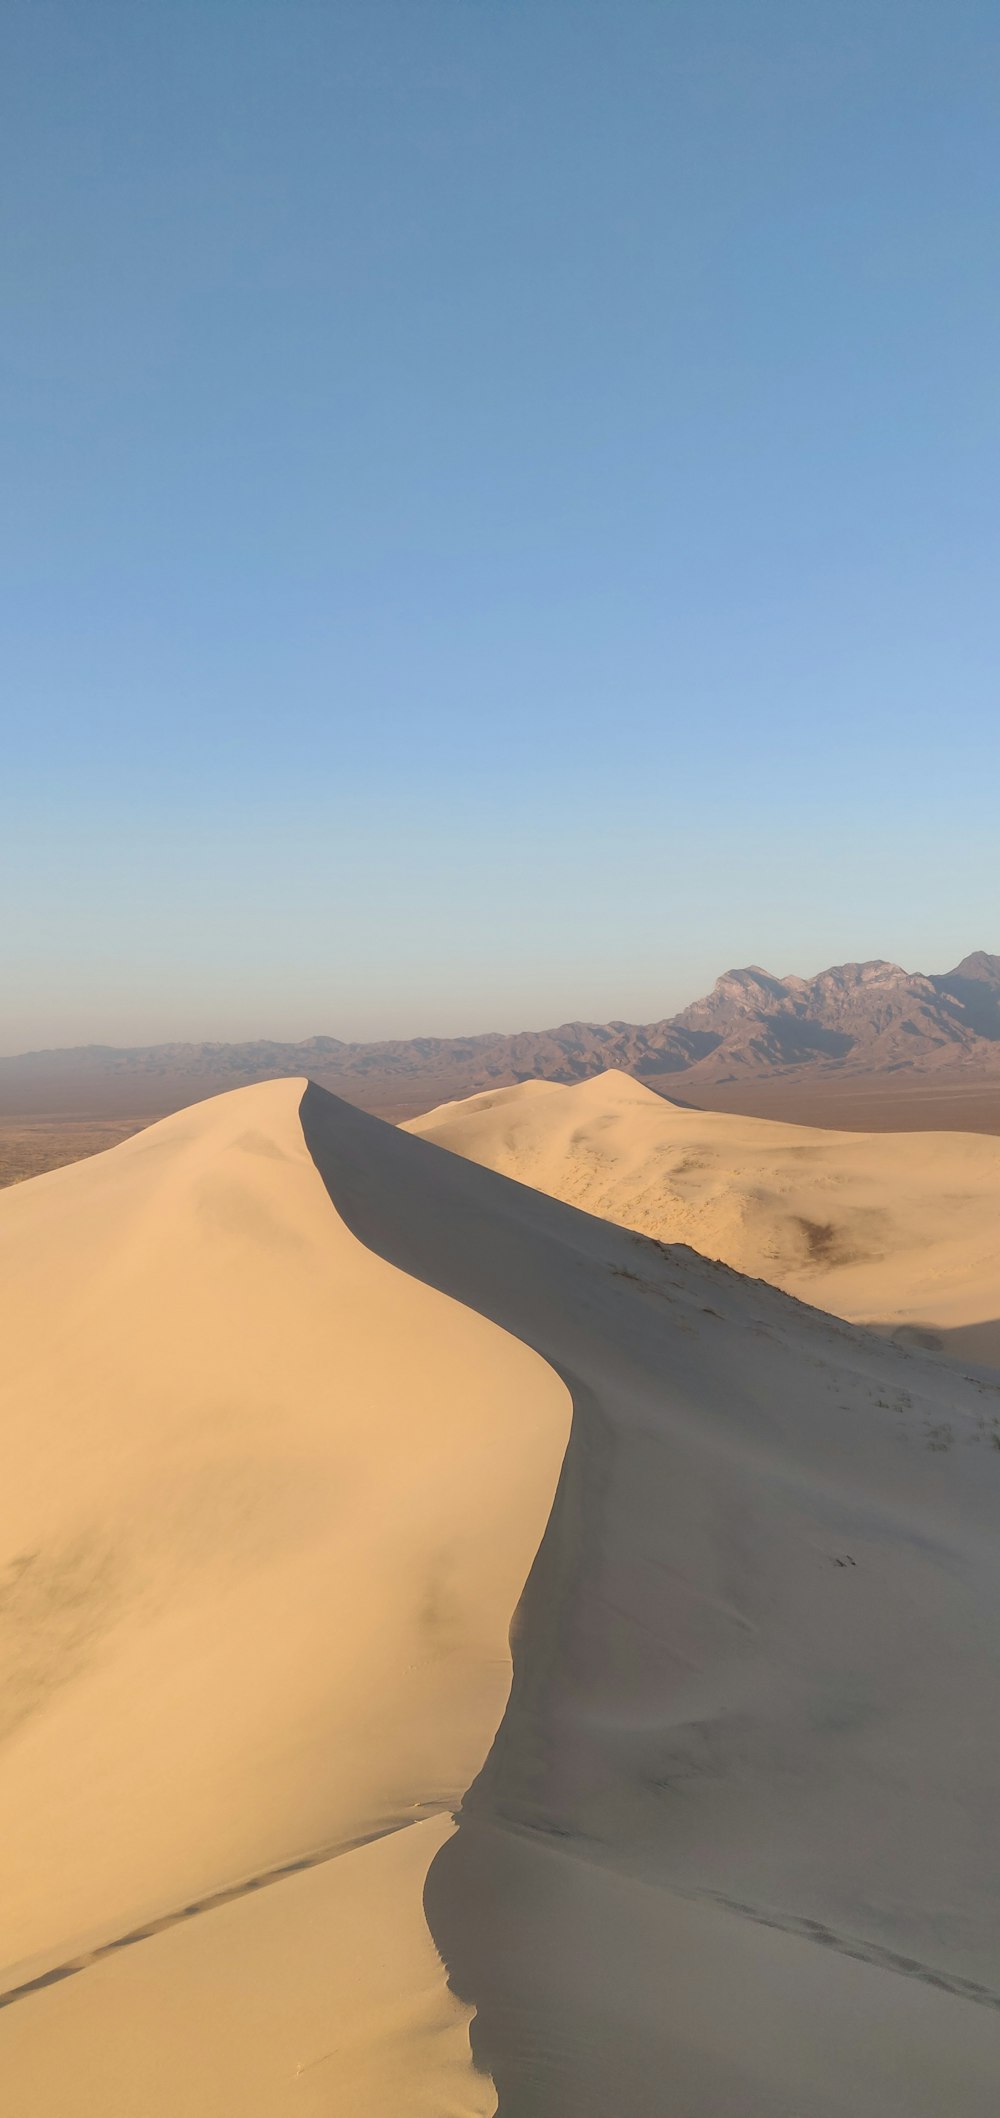 uma paisagem desértica com dunas de areia